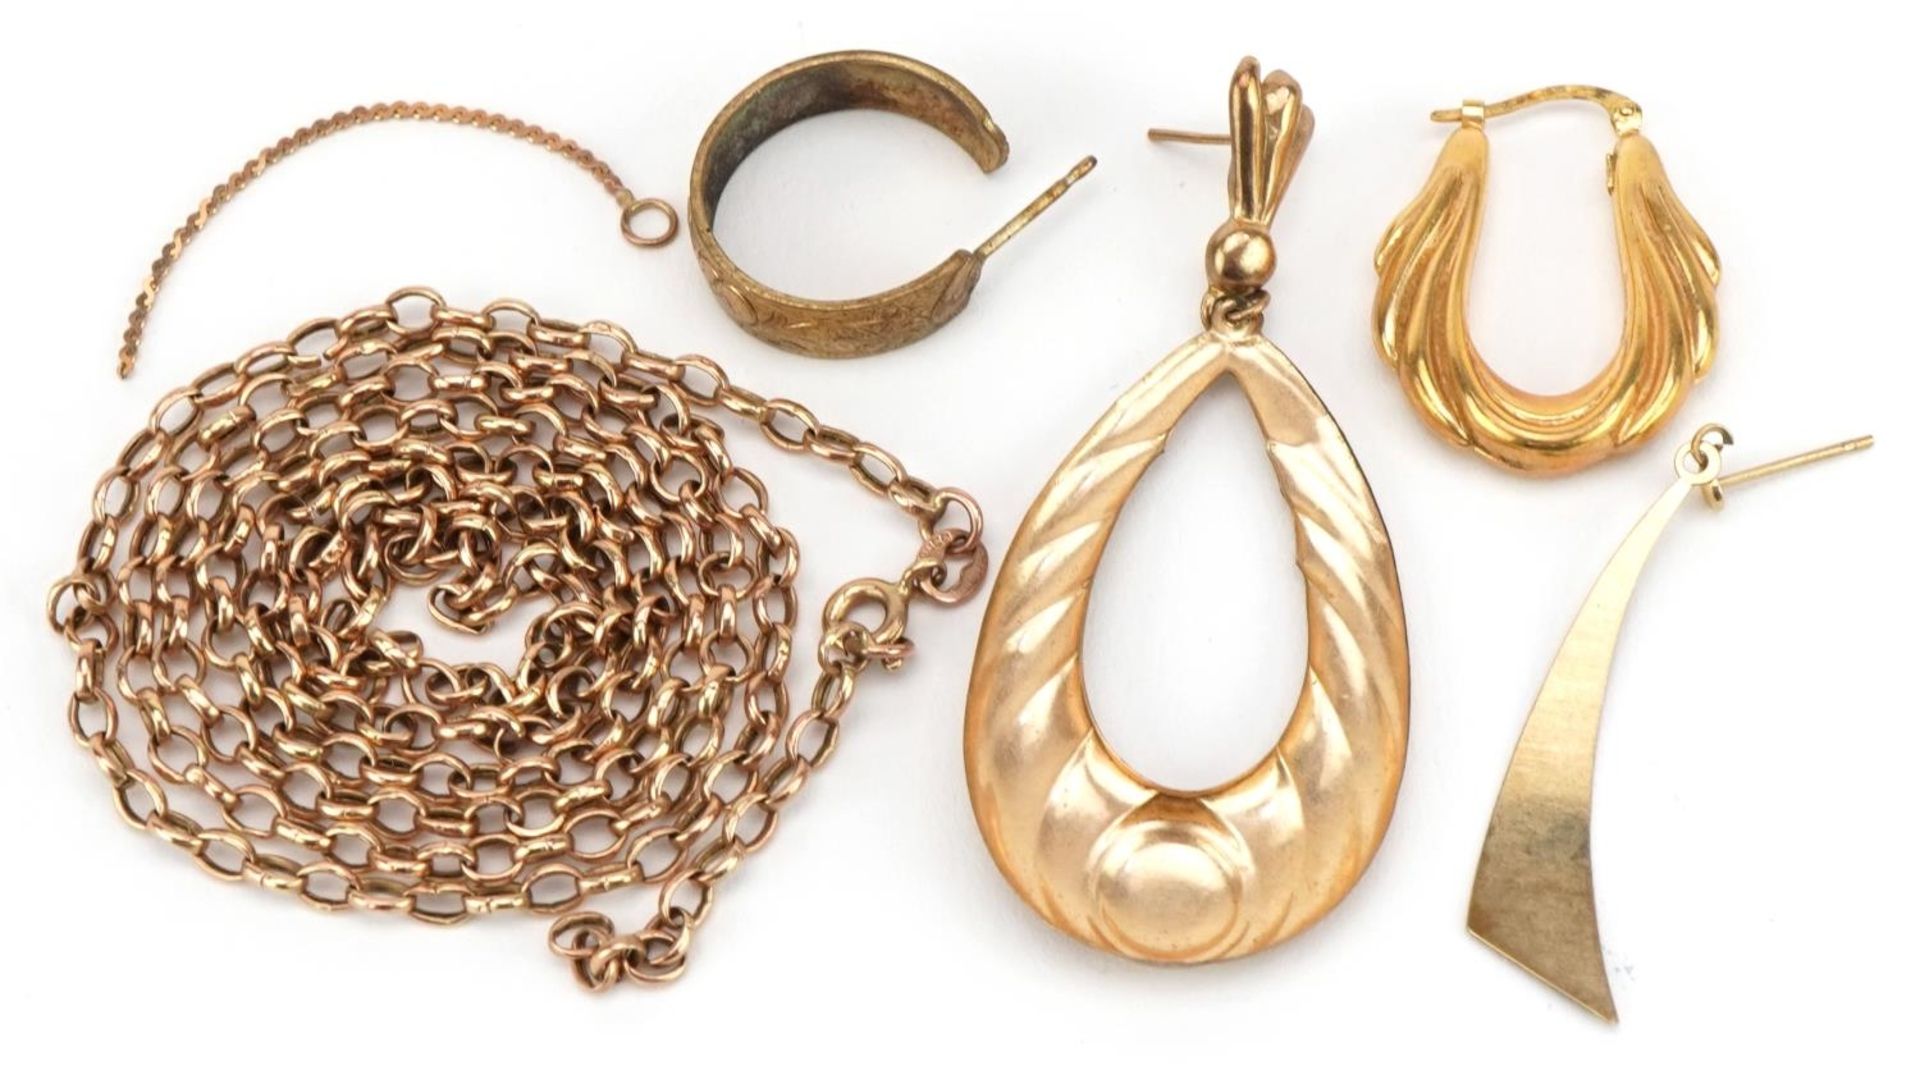 9ct gold and yellow metal jewellery including broken Belcher link necklace and hoop earring, total - Bild 2 aus 2